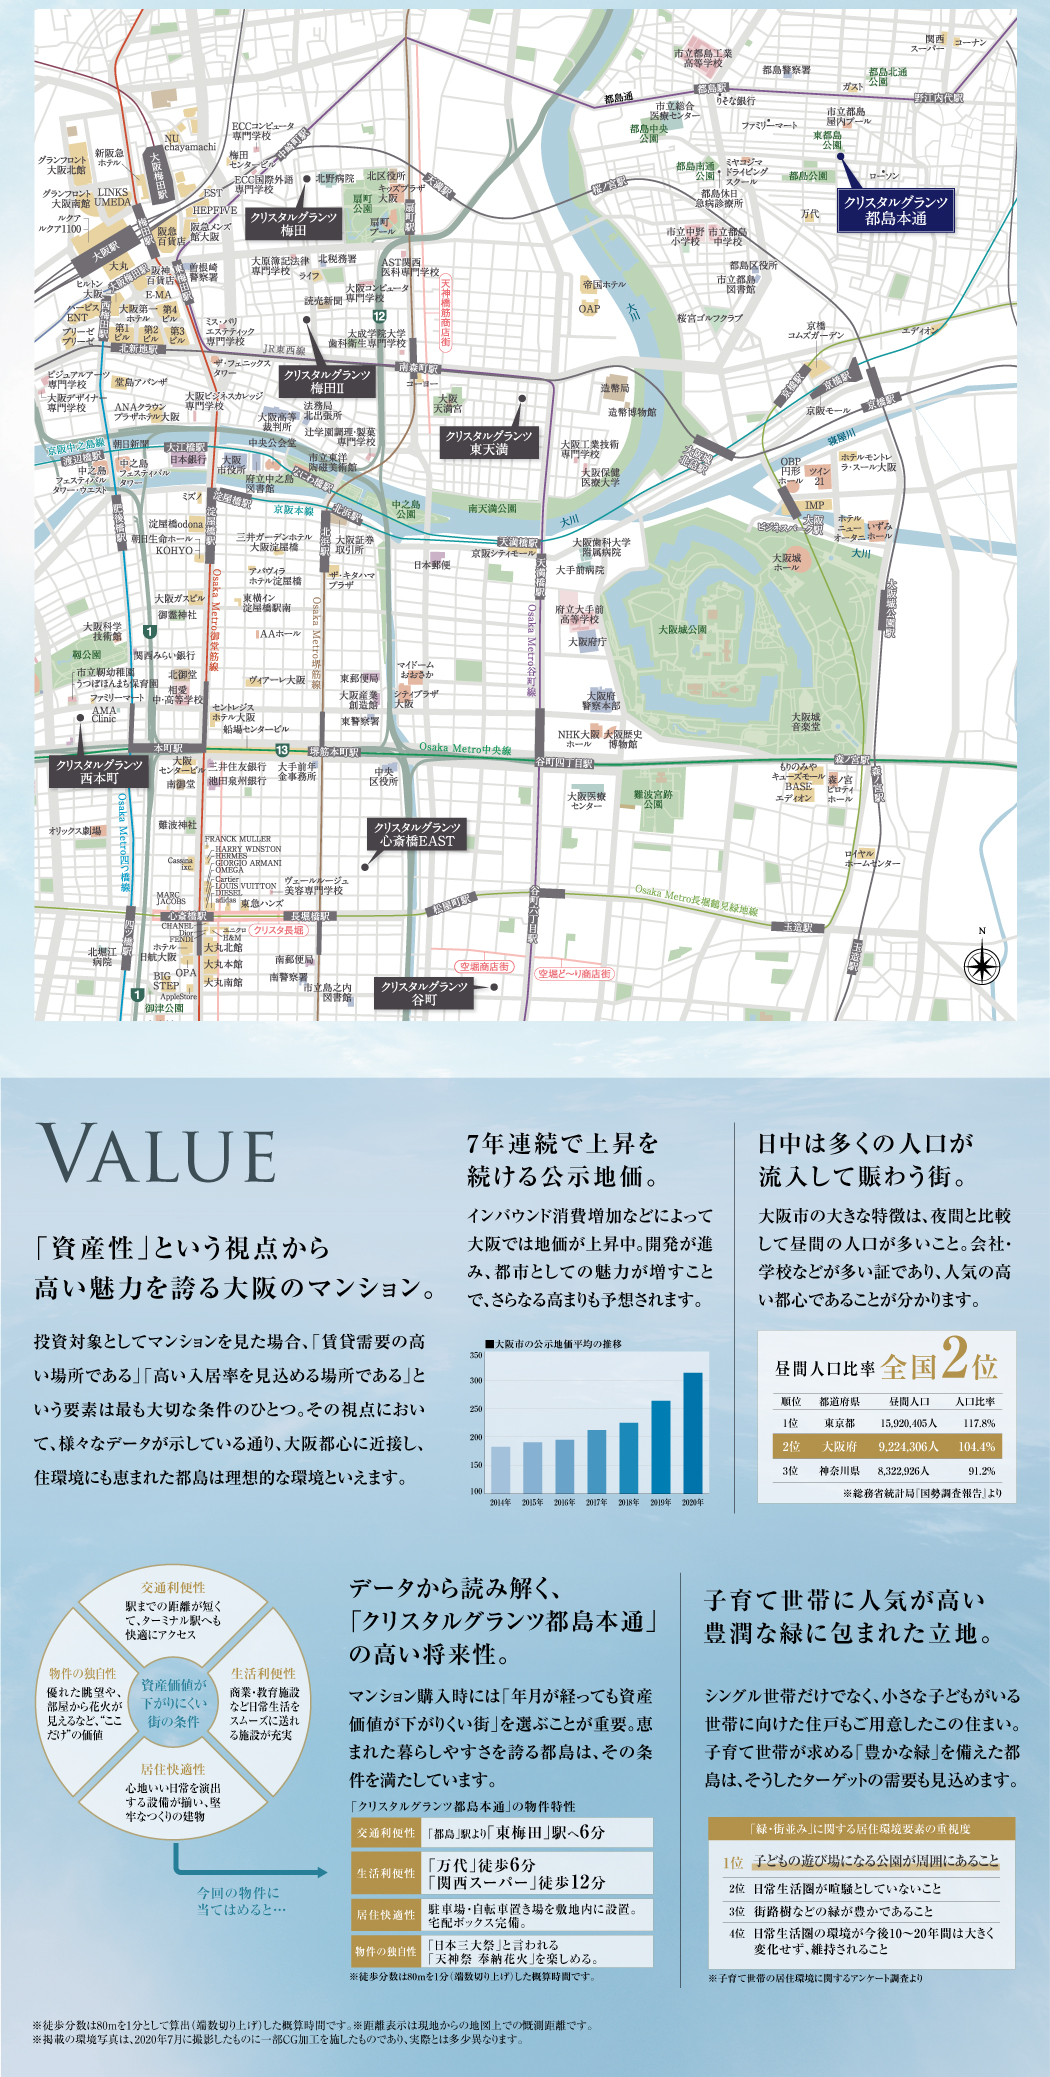 VALUE,「資産性」という視点から高い魅力を誇る大阪のマンション。